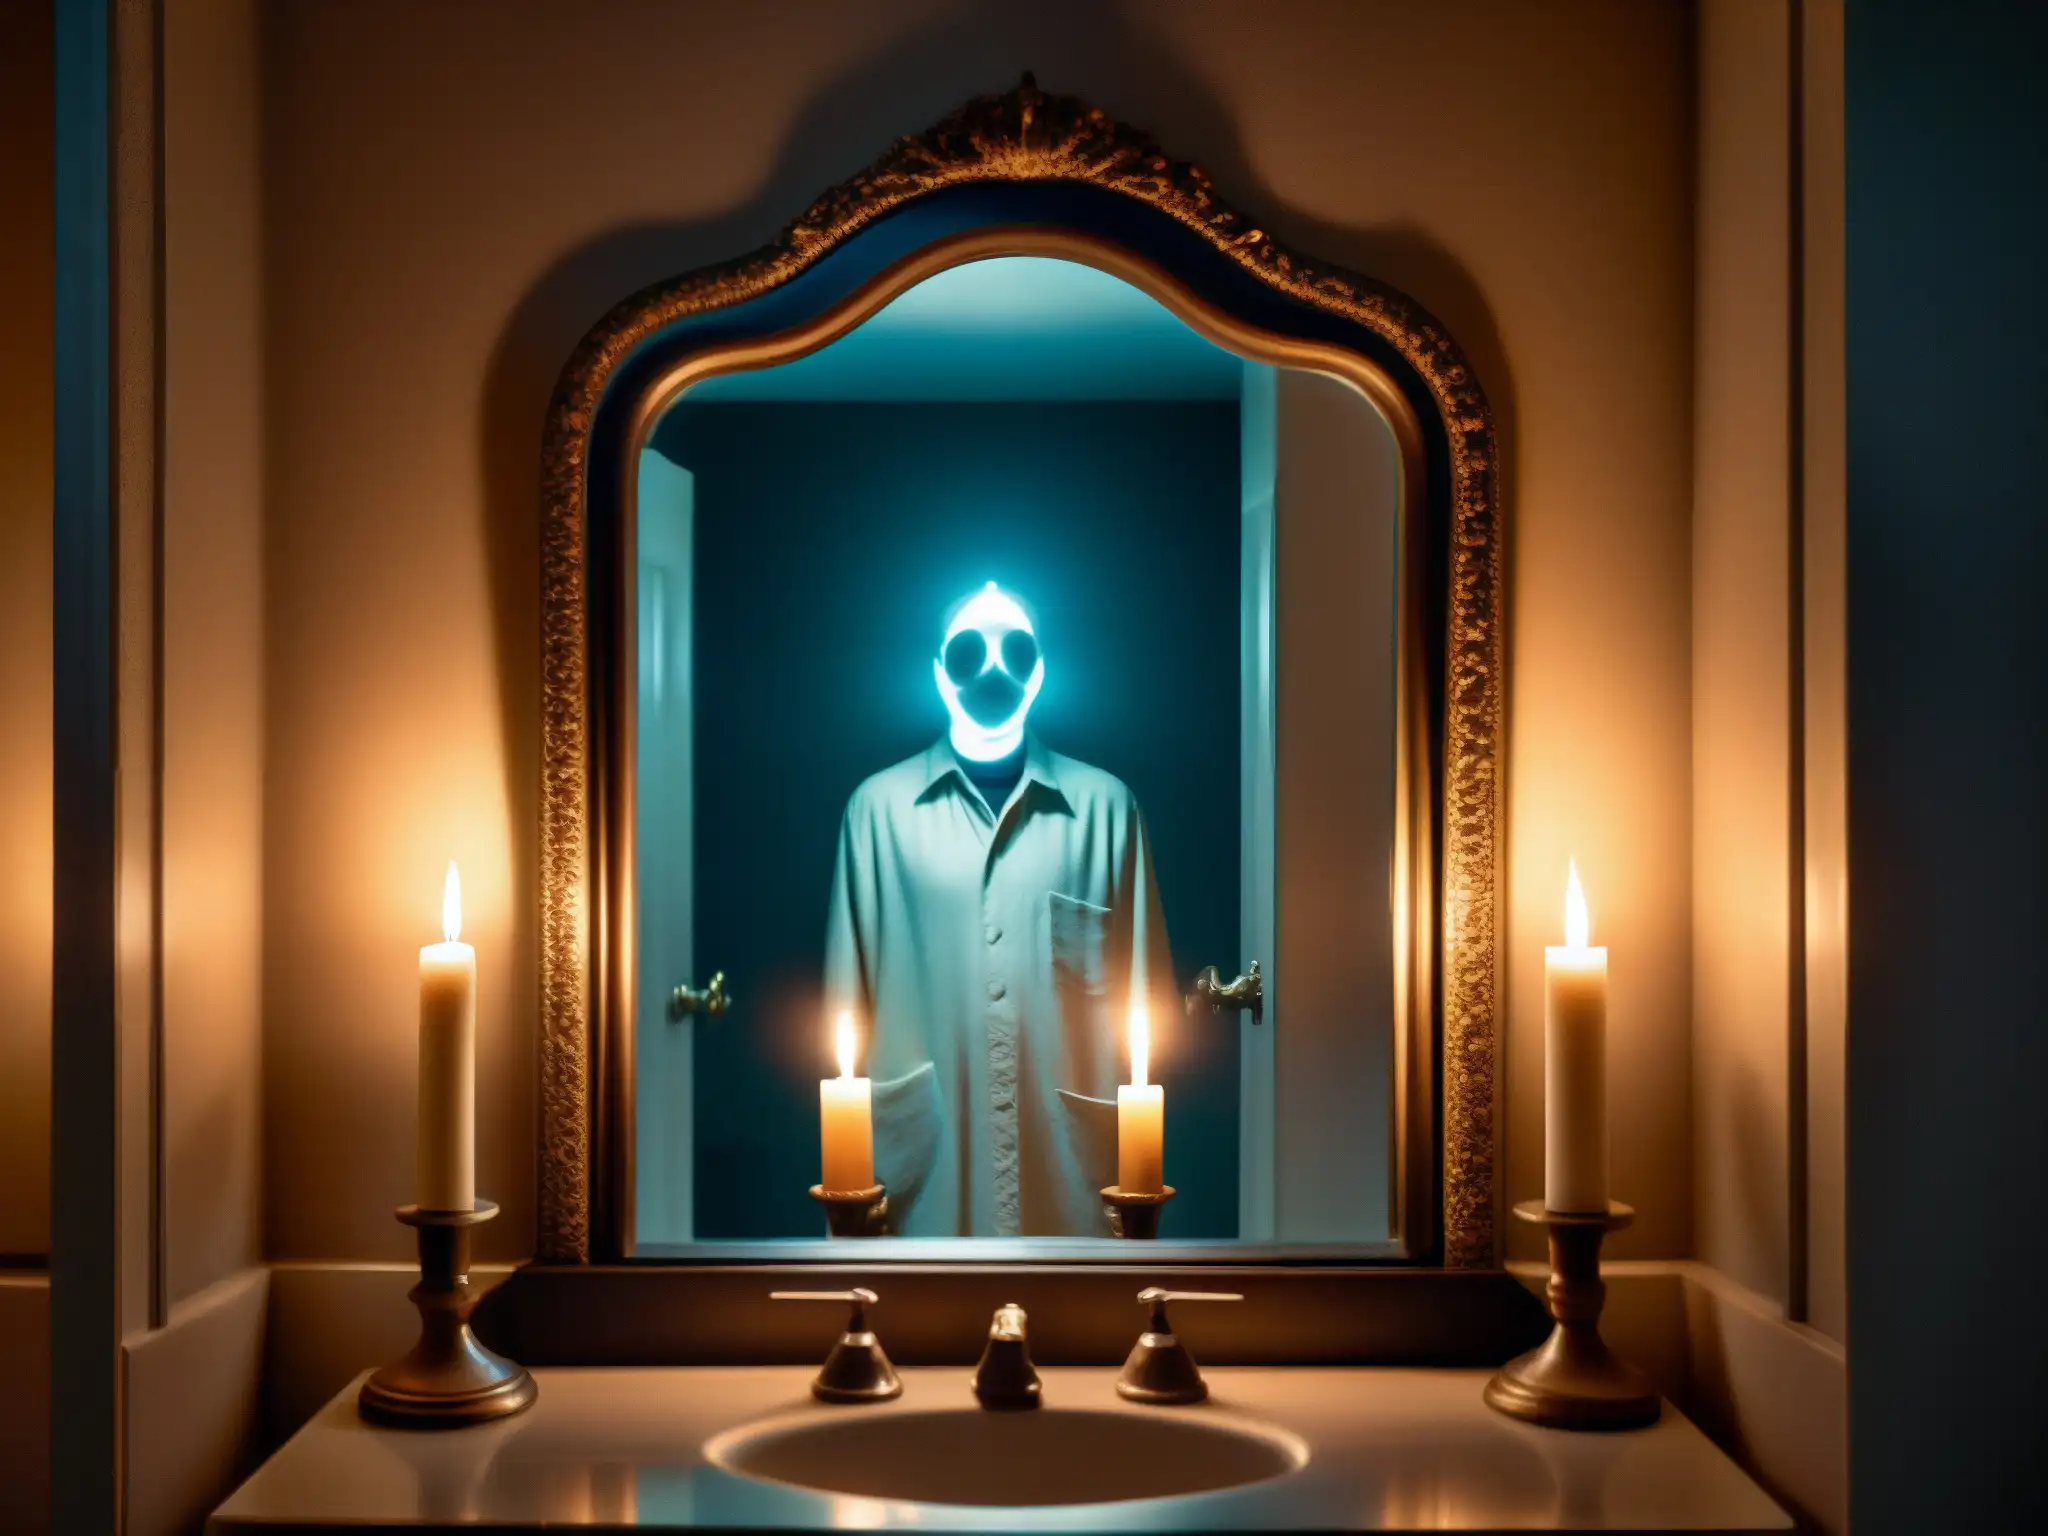 En un antiguo baño, un espejo refleja una figura fantasmal con ojos brillantes, velas parpadeantes y un ambiente inquietante